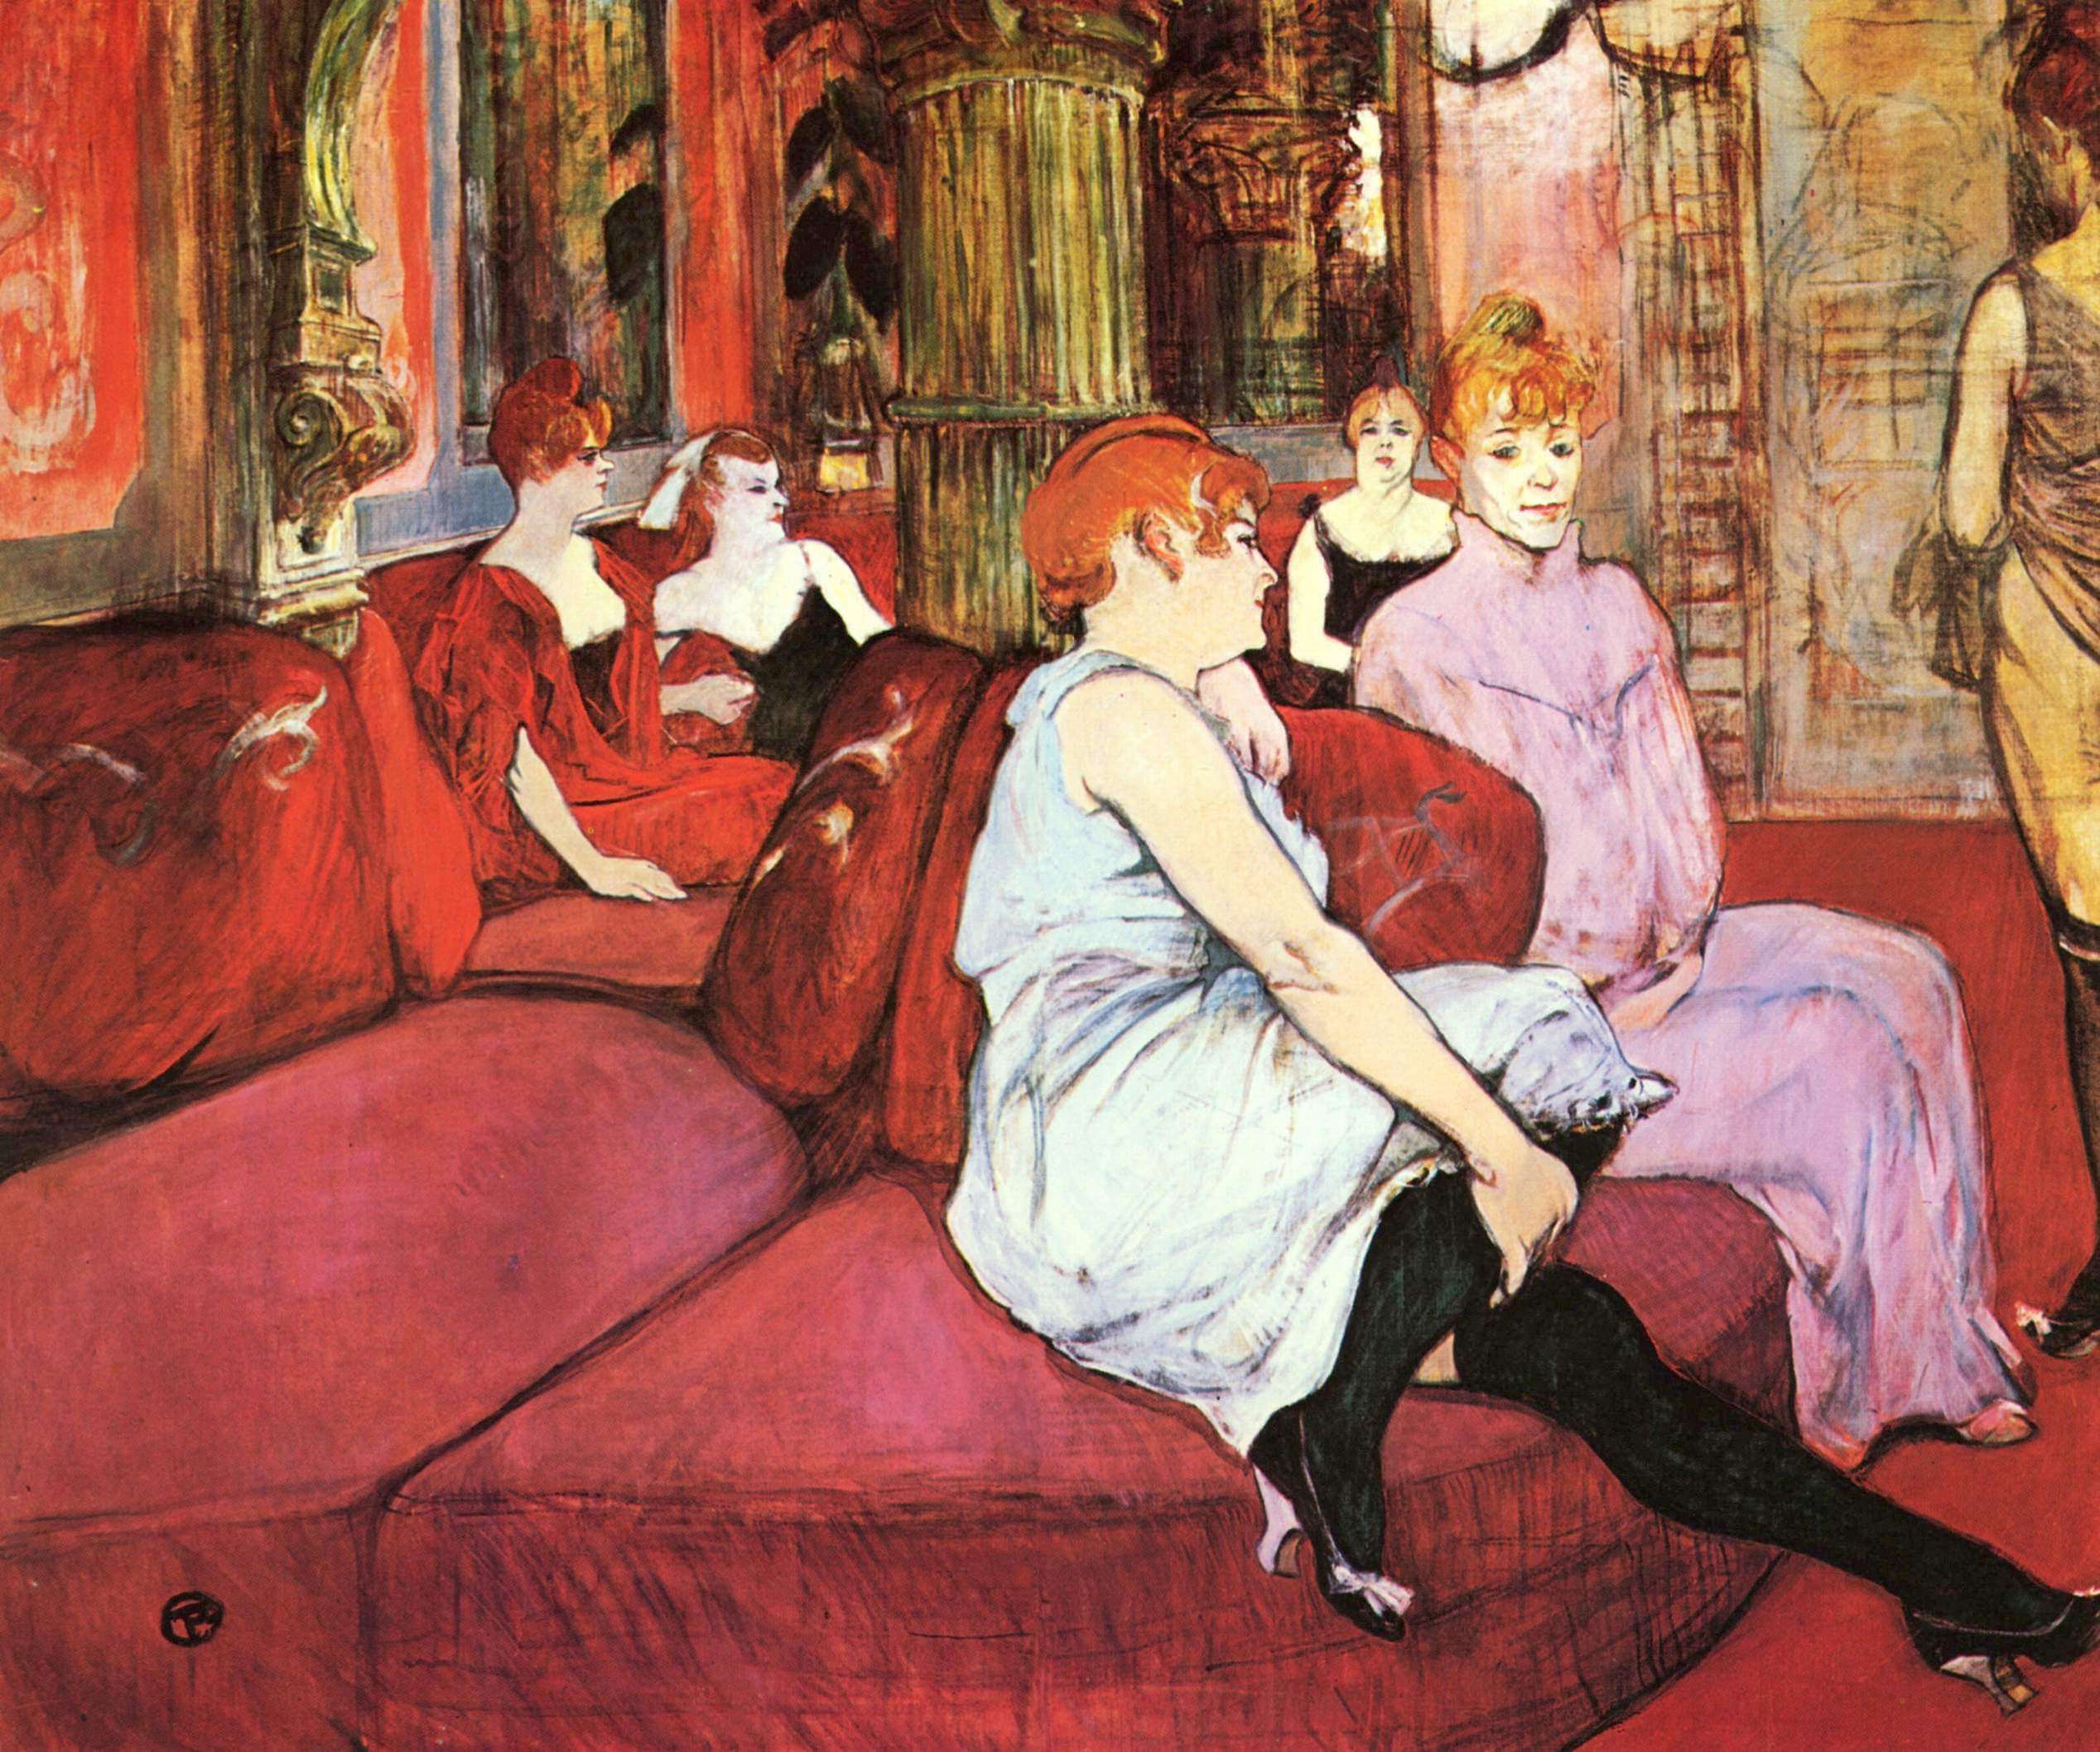 Impresionismo - En el Salón de la Calle de Moulins - Lautrec